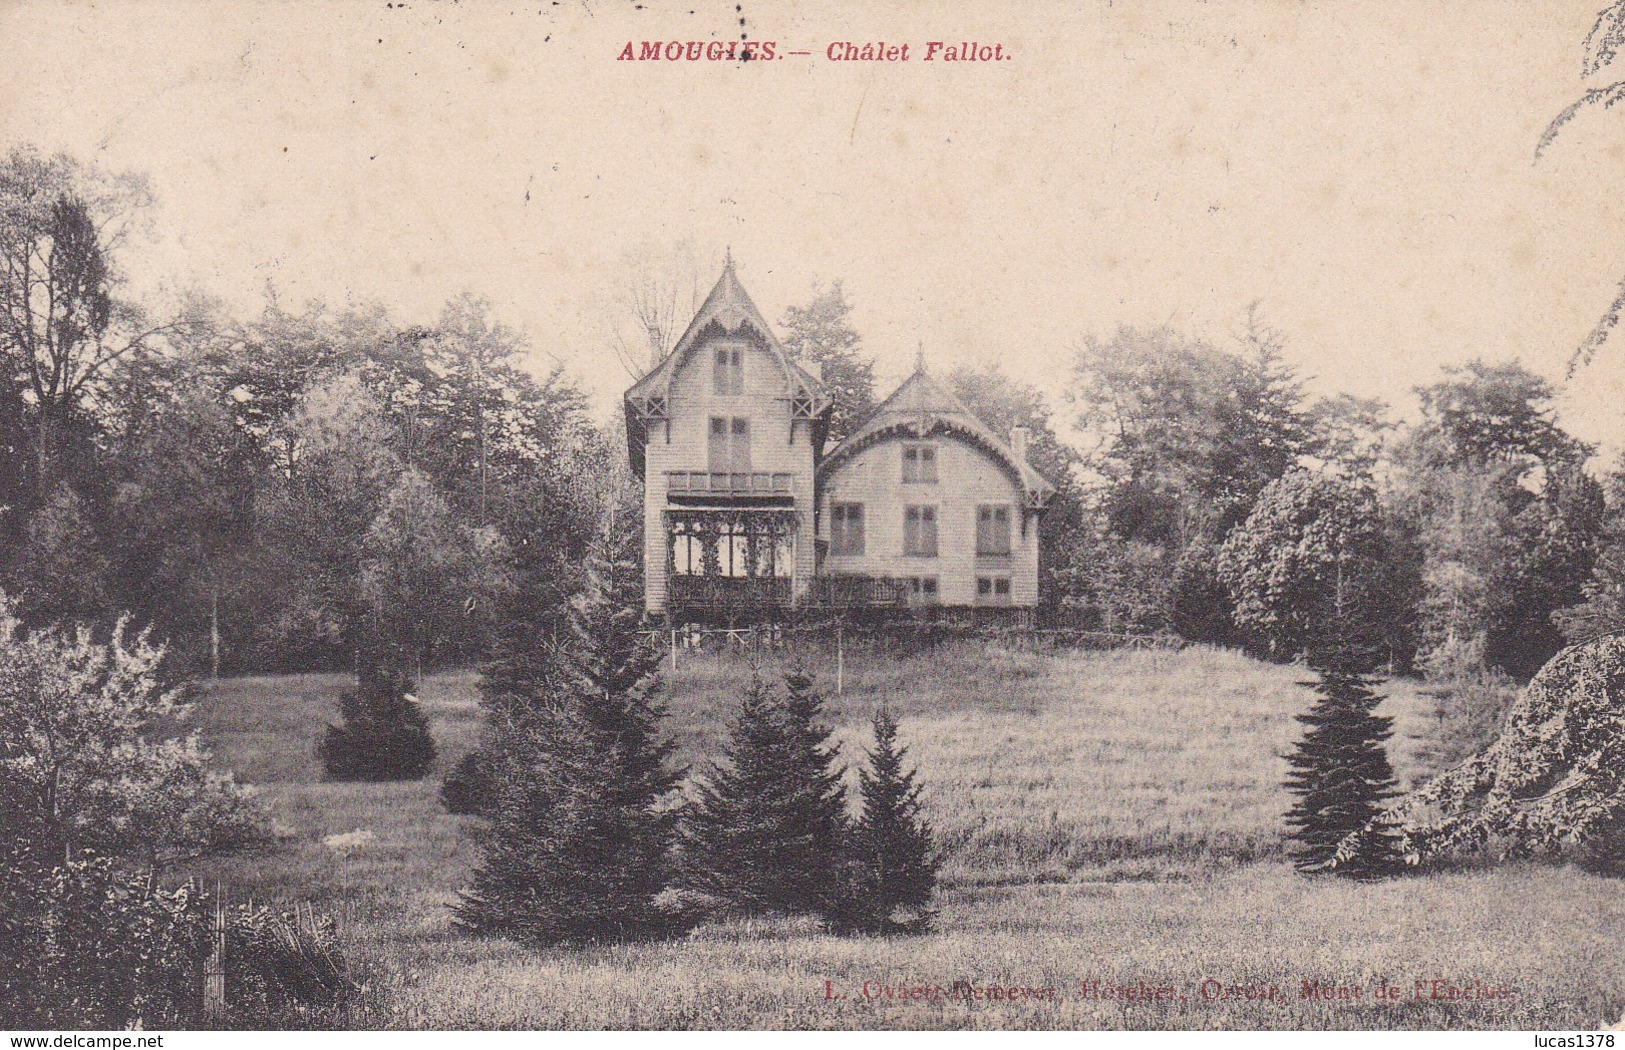 AMOUGIES / CHALET FALLOT / CIRC 1909 - Mont-de-l'Enclus